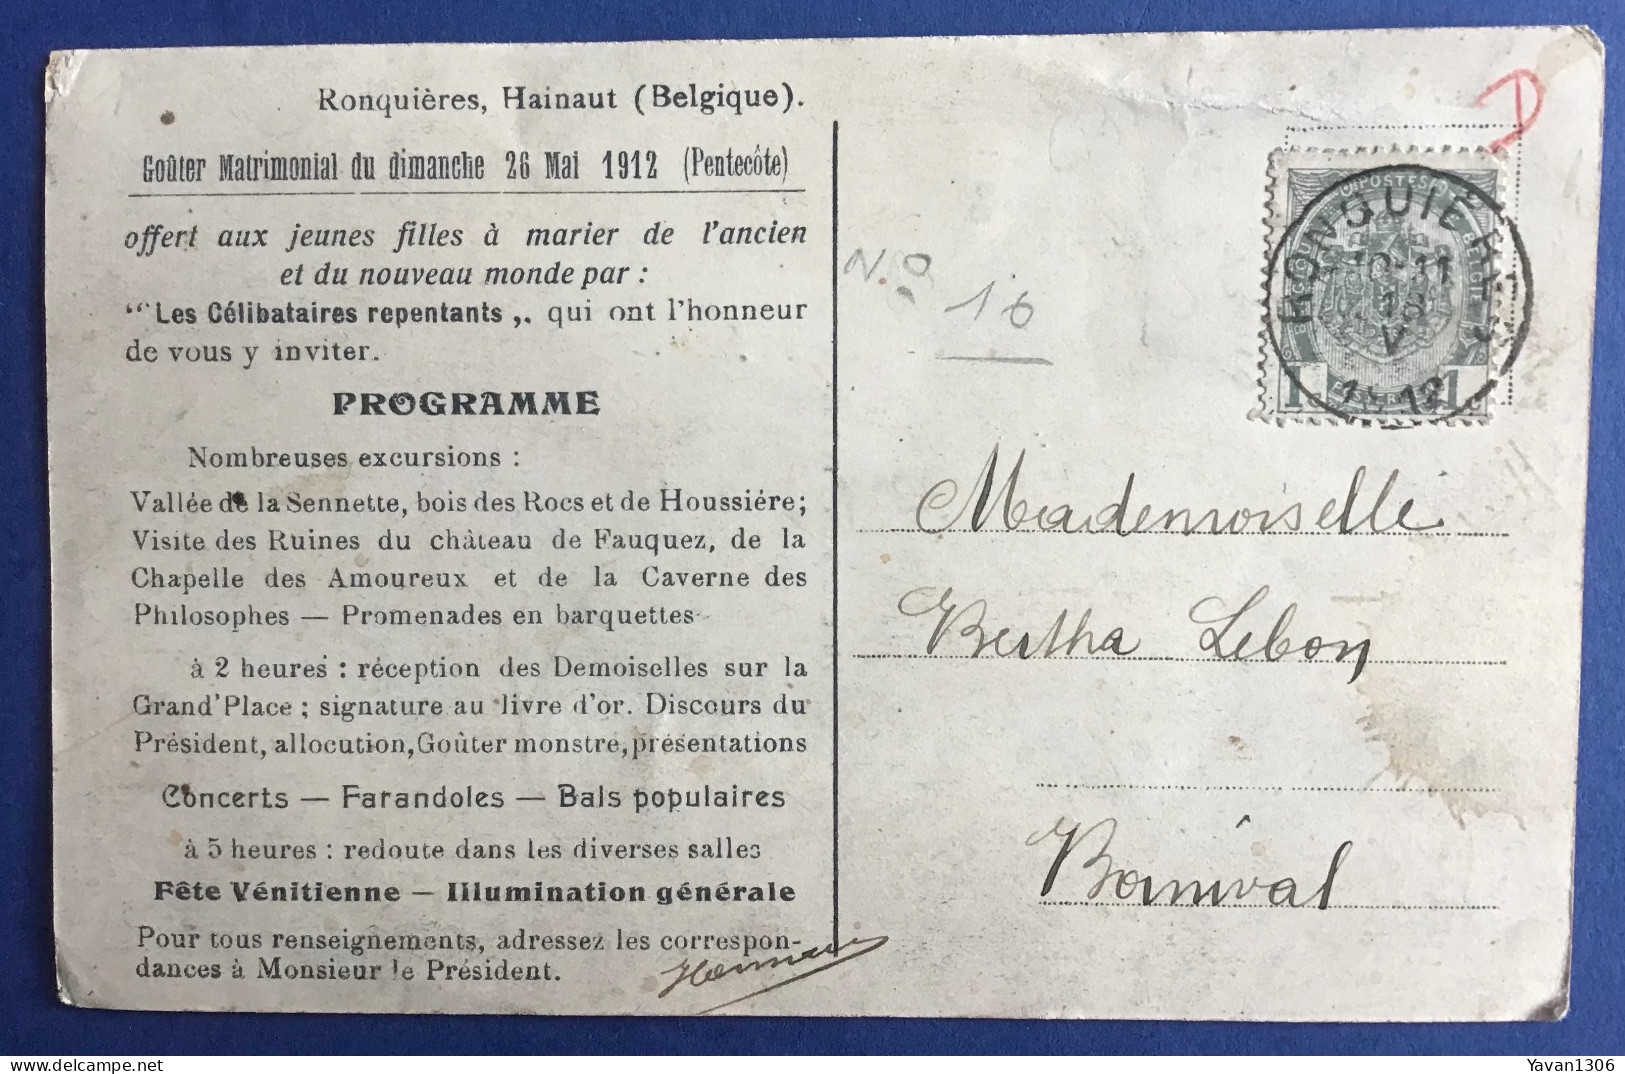 Ronquieres  1912 Goûter Matrimonial Du Dimanche 26 Mai ( Pentecôte) - Braine-le-Comte